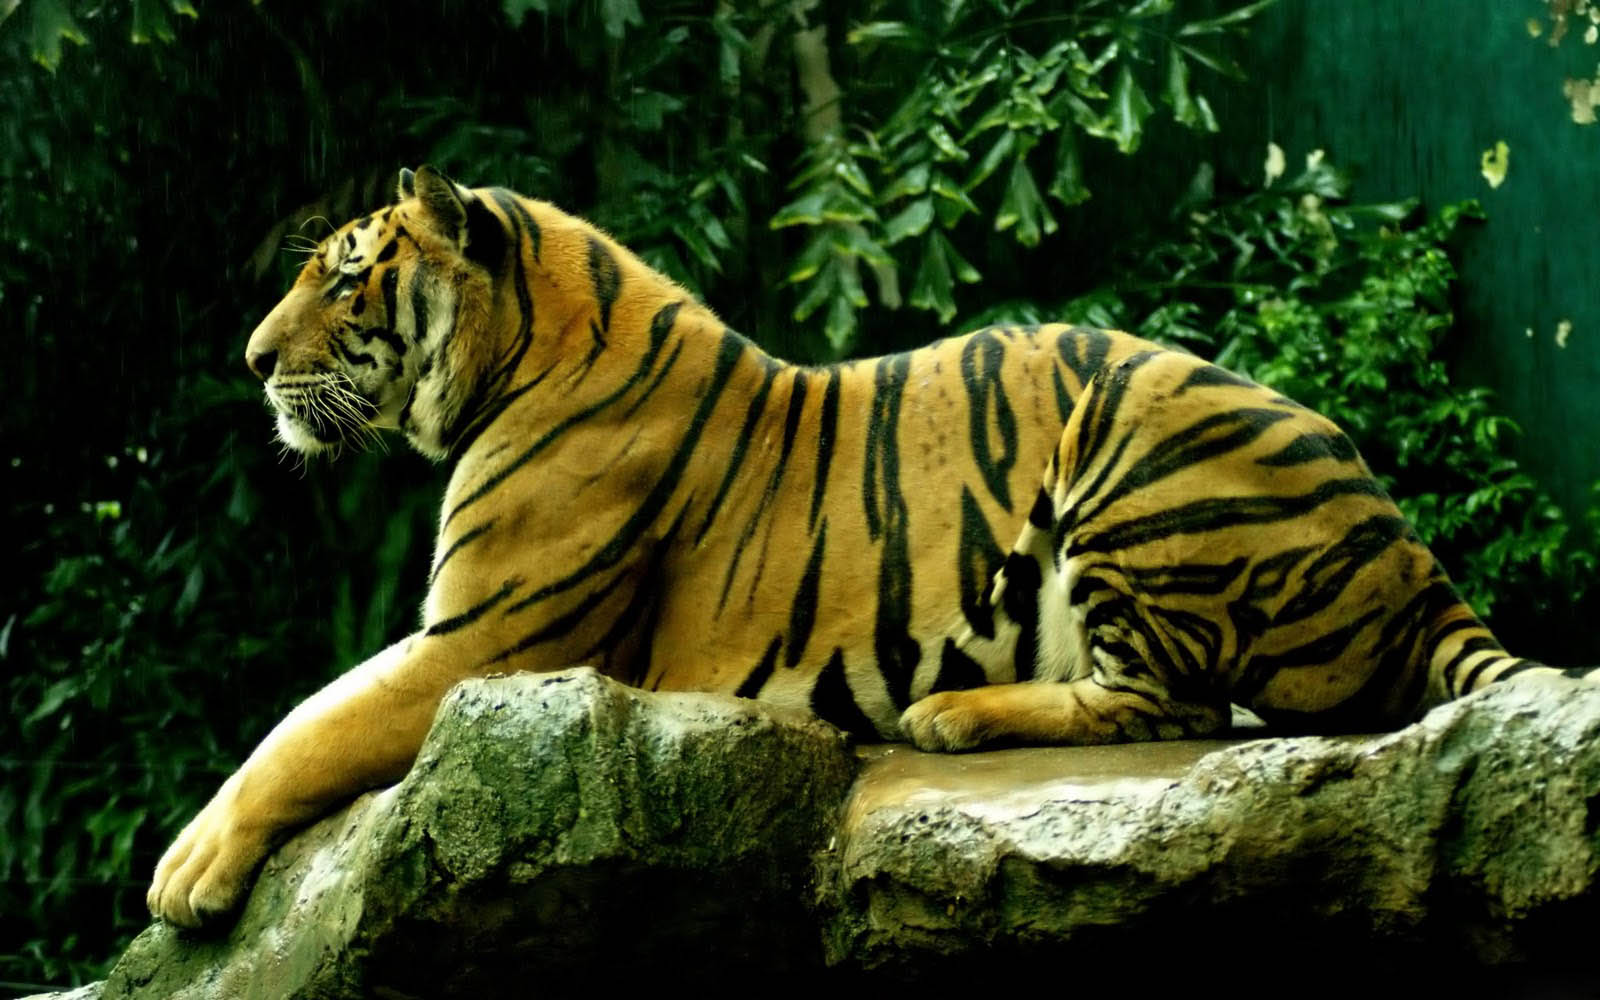 Wallpaper Tiger Desktop And Background